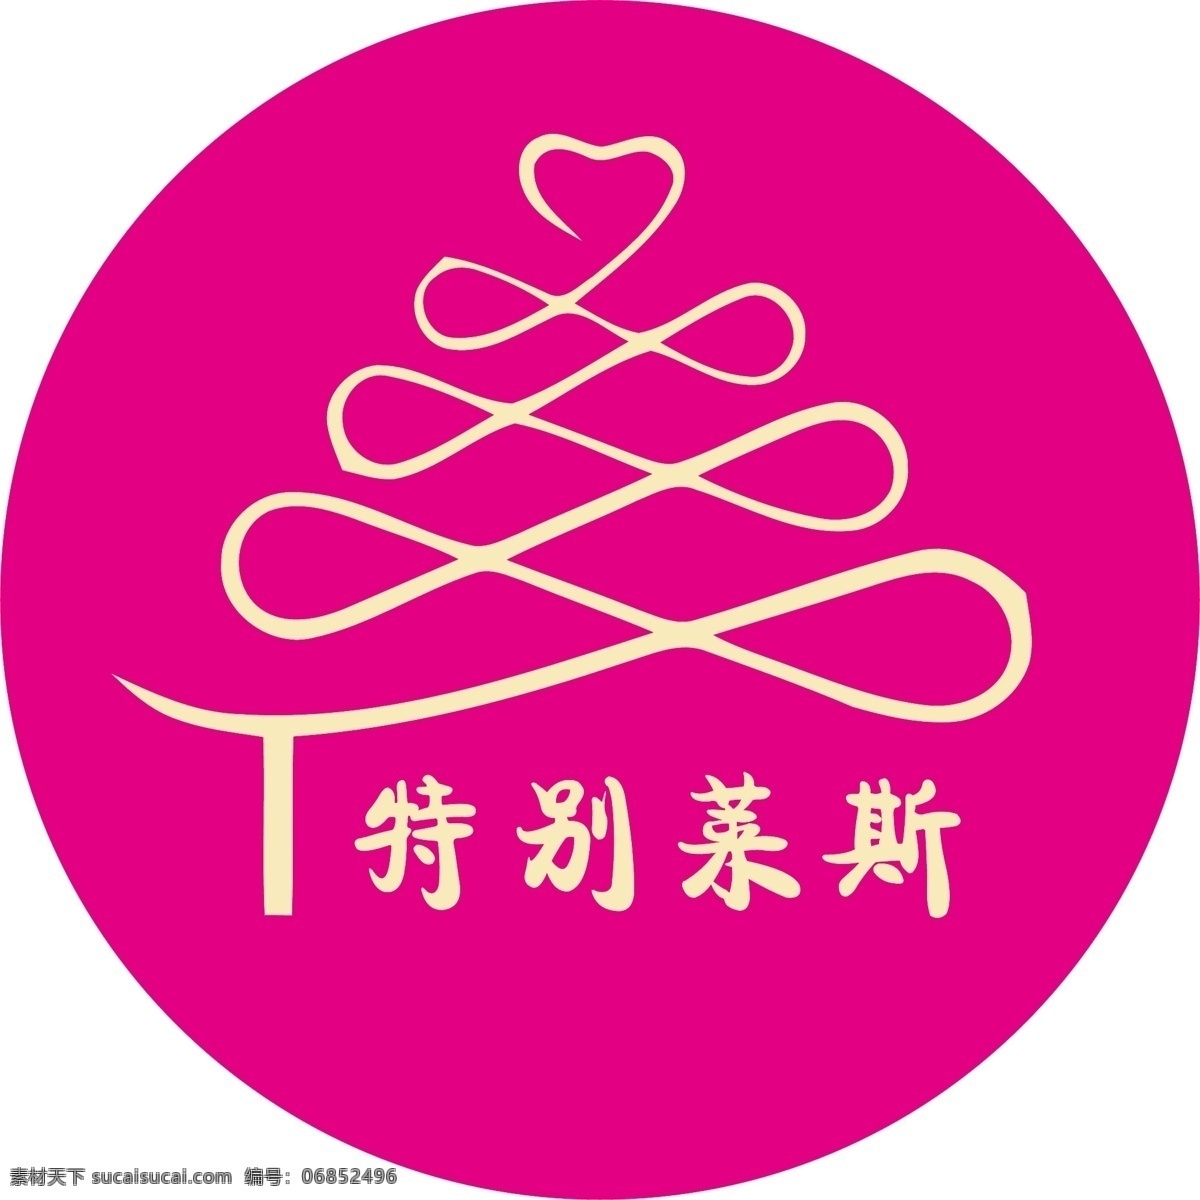 千 层 蛋糕 店 logo 源文件 特别莱斯 千层蛋糕 粉色 红色